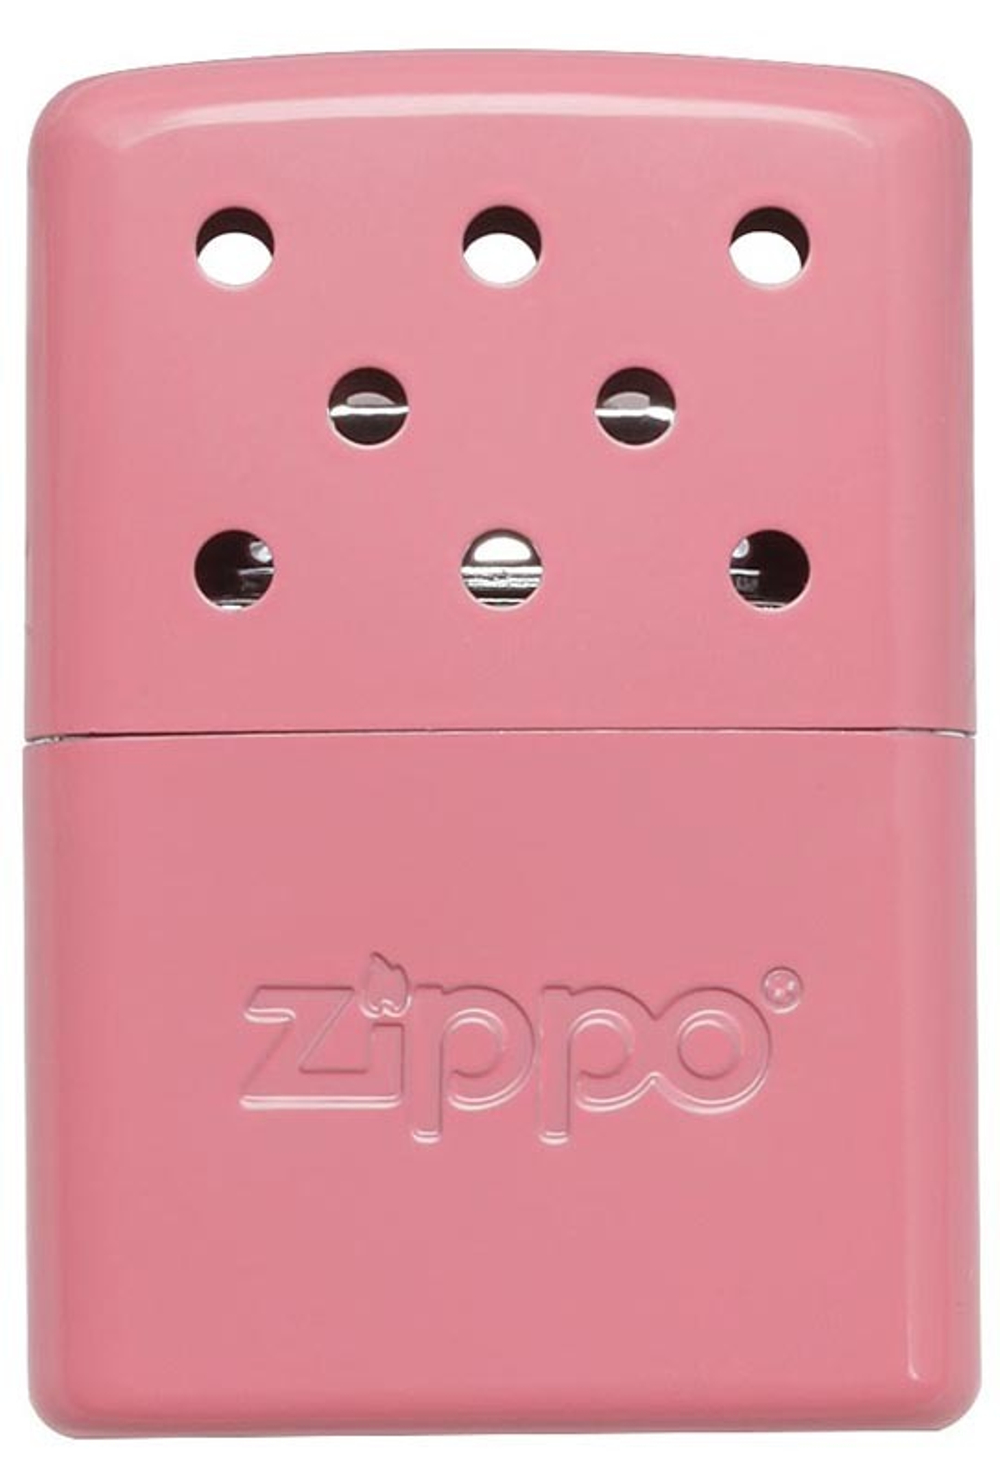 Легендарная классическая американская каталитическая грелка для рук ZIPPO Pink ™ розовая матовая из стали ZP-40363